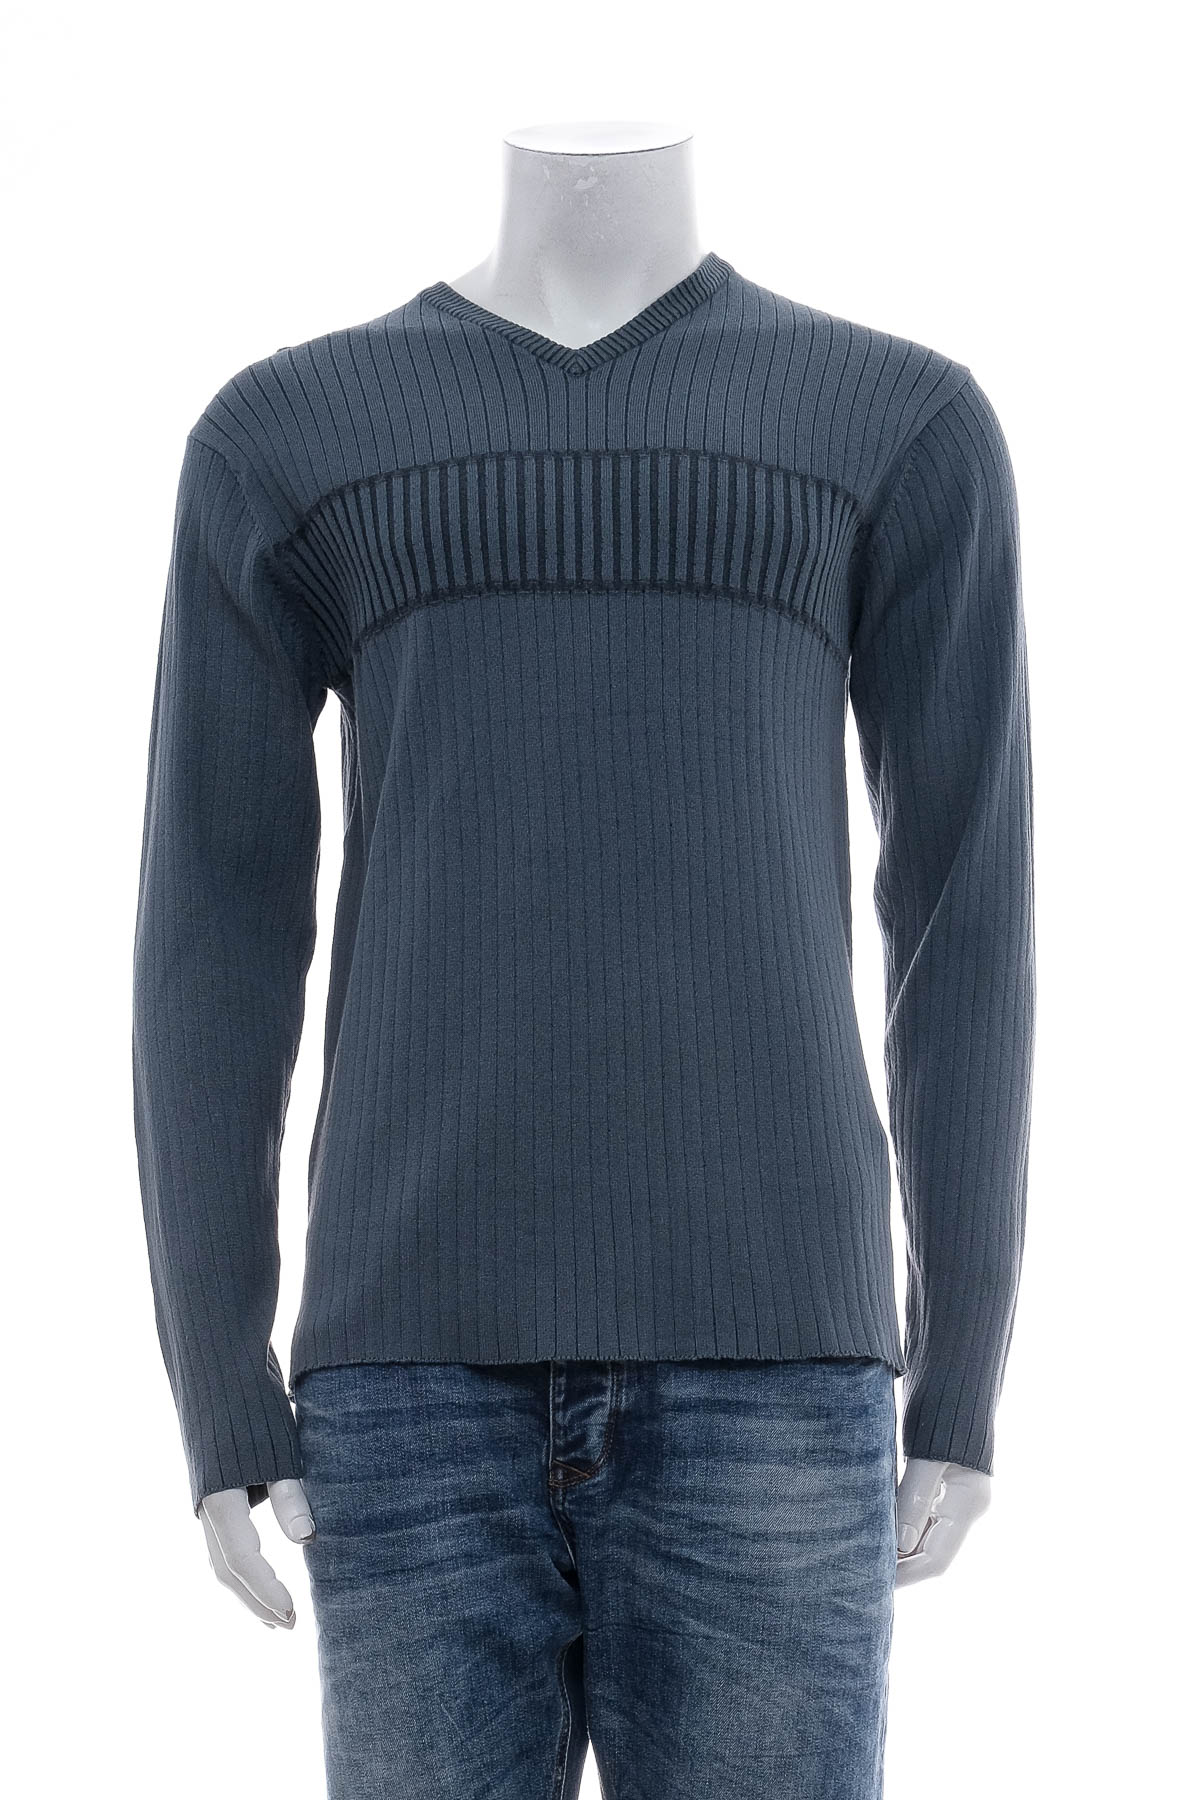 Men's sweater - Claiborne - 0